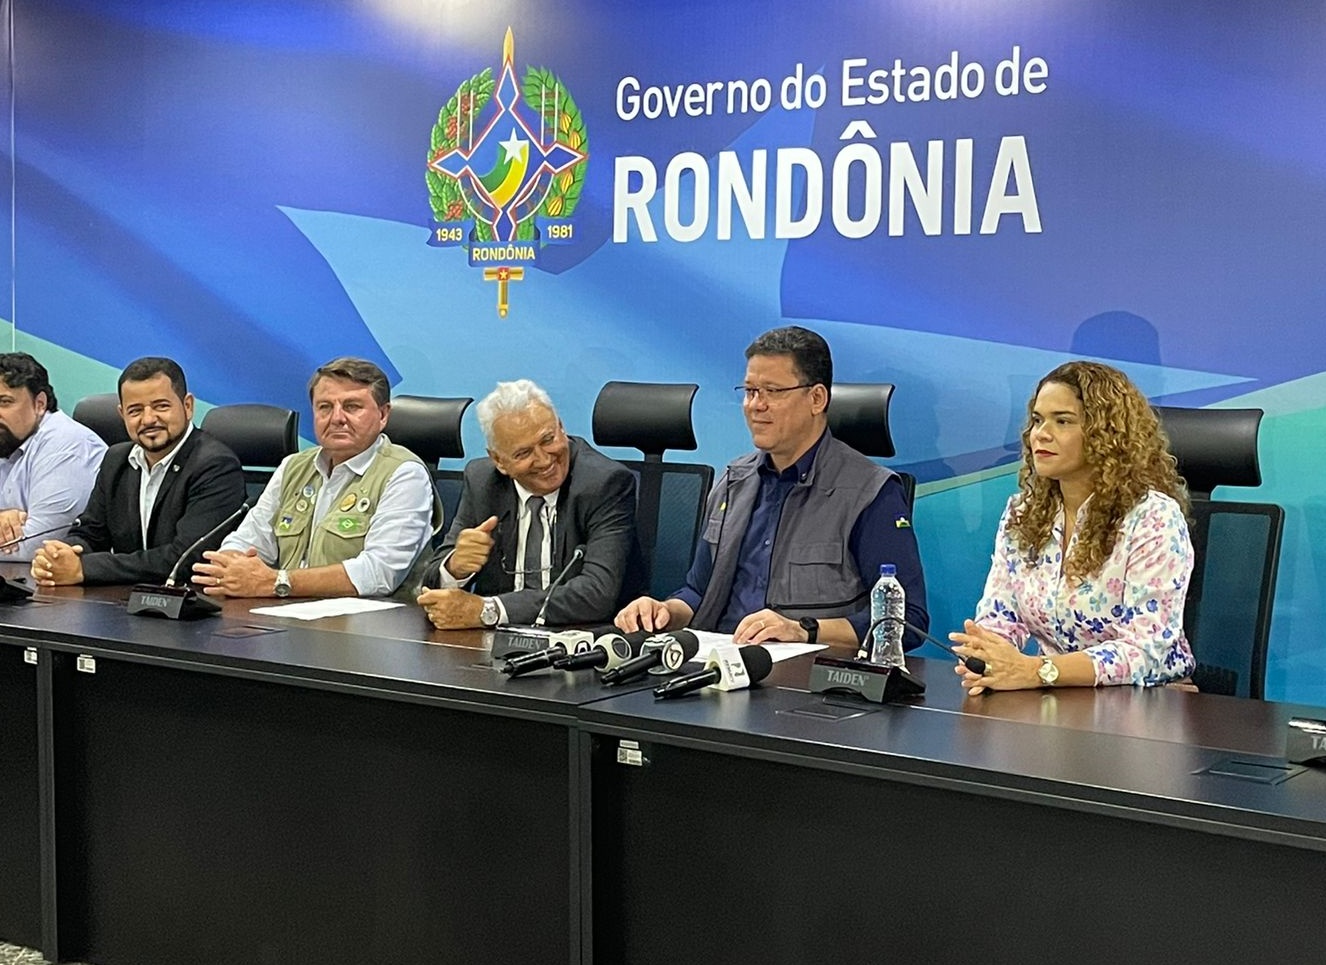 FEIRA AGROPECUÁRIA: Governo lança 9ª Rondônia Rural Show e anuncia 8 países participantes